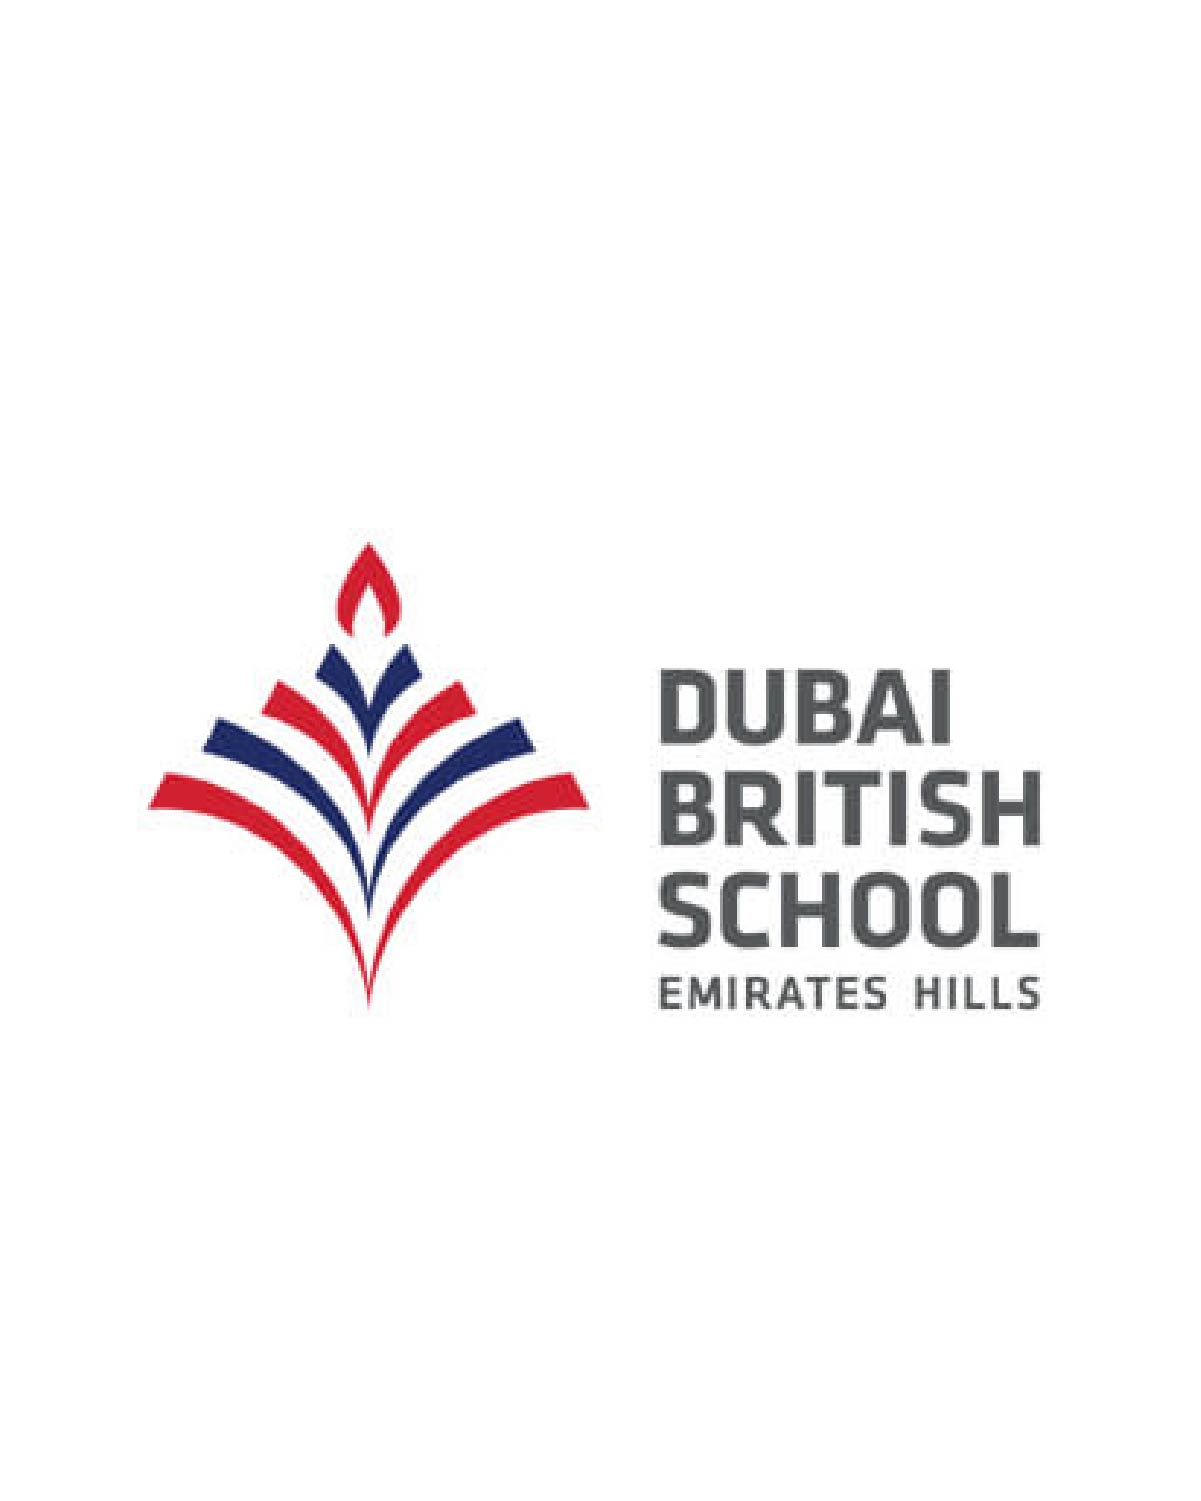 Dubai British School (Emirates Hills)